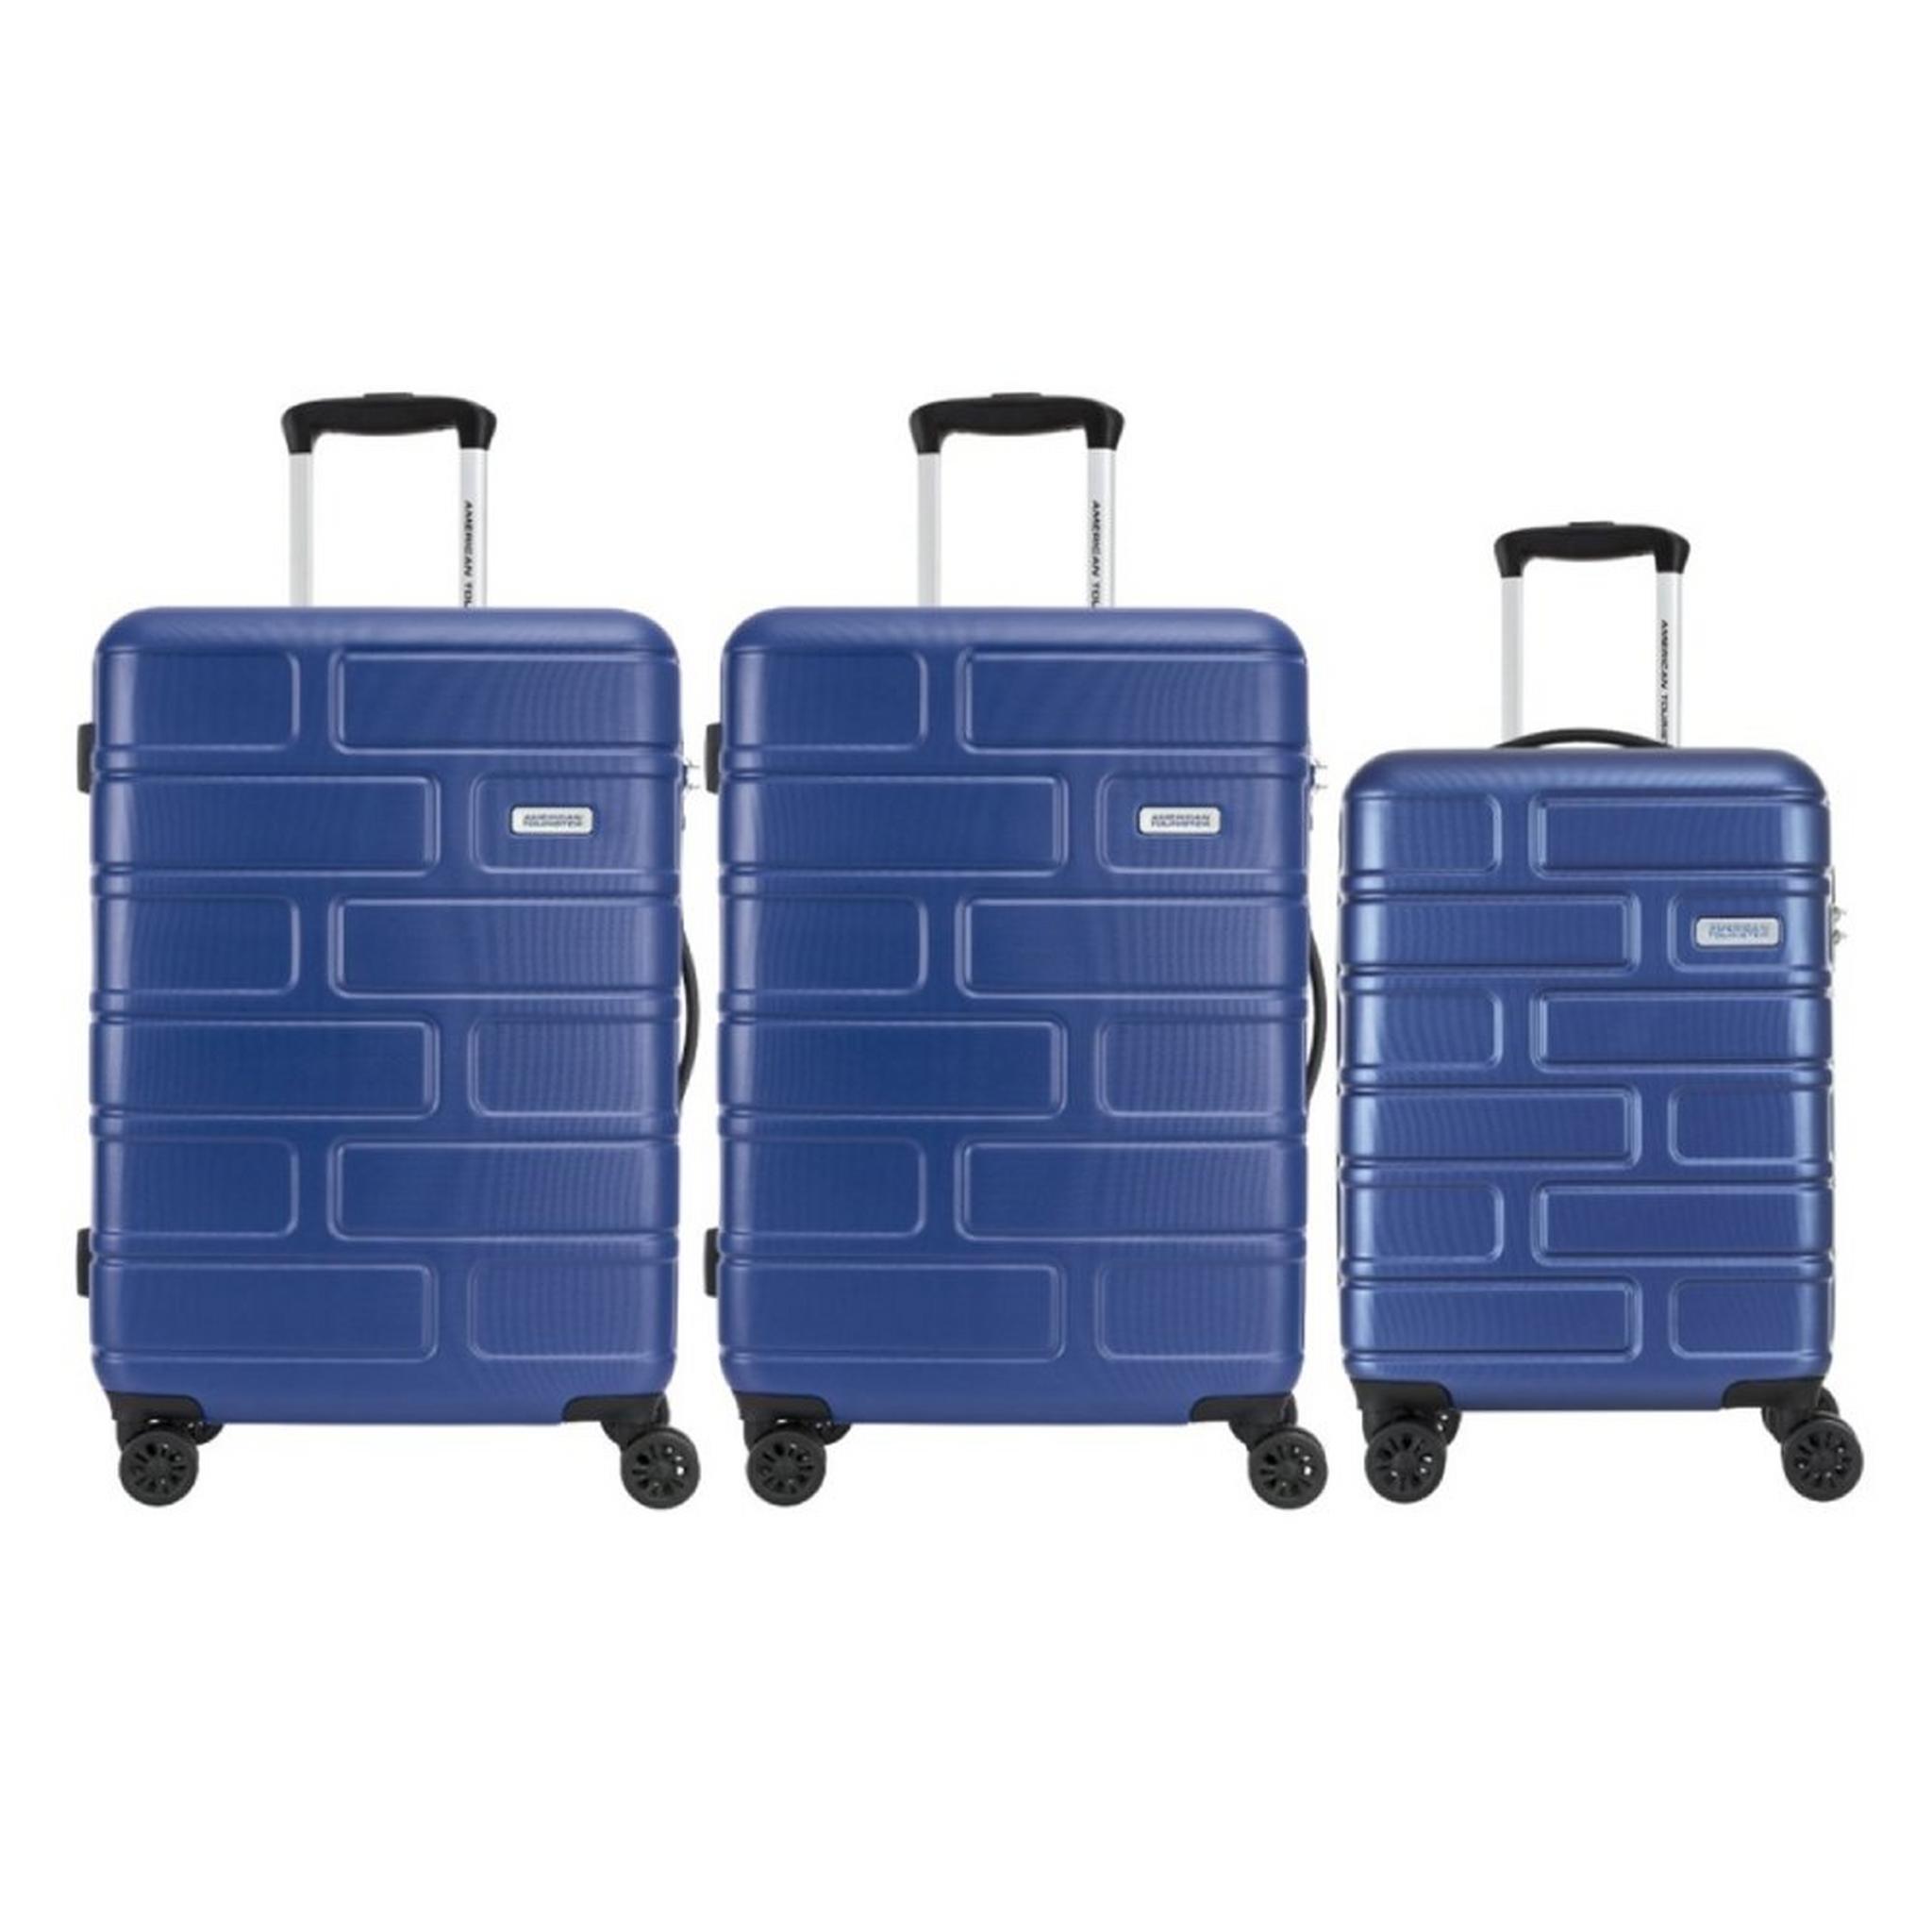 طقم حقائب سفر بريكلين بجوانب صلبة وعجلات دوارة من أمريكان توريستر،مكون من حقيبتين متوسطتين وواحدة صغيرة، GE3X71006MMS – أزرق